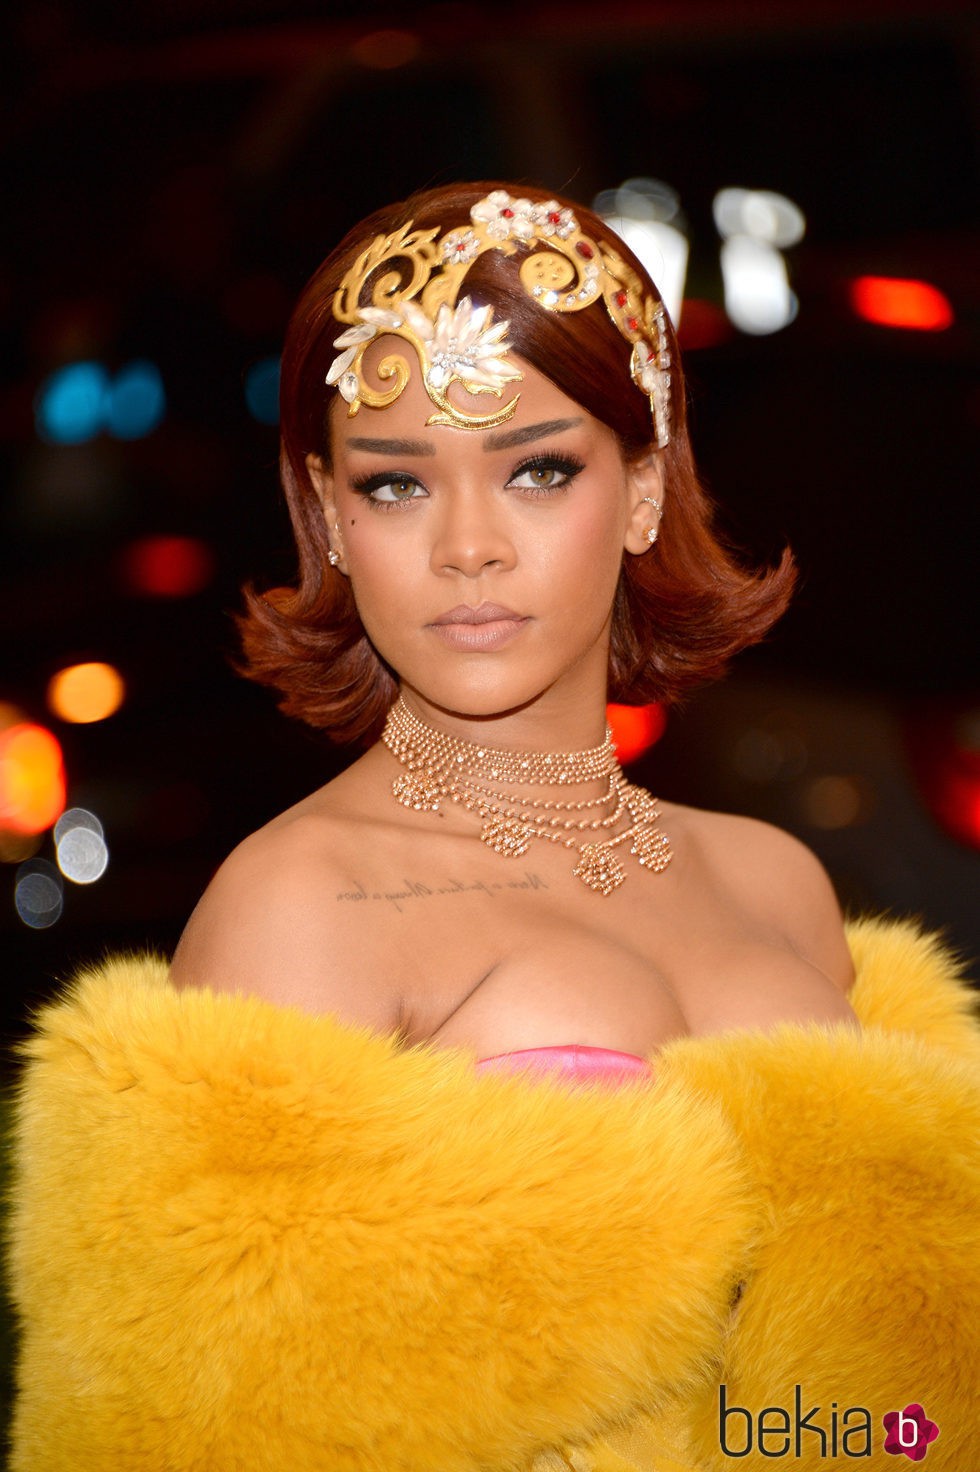 Rihanna en la red carpet de 'China: Through the looking glass' en 2015 en Nueva York